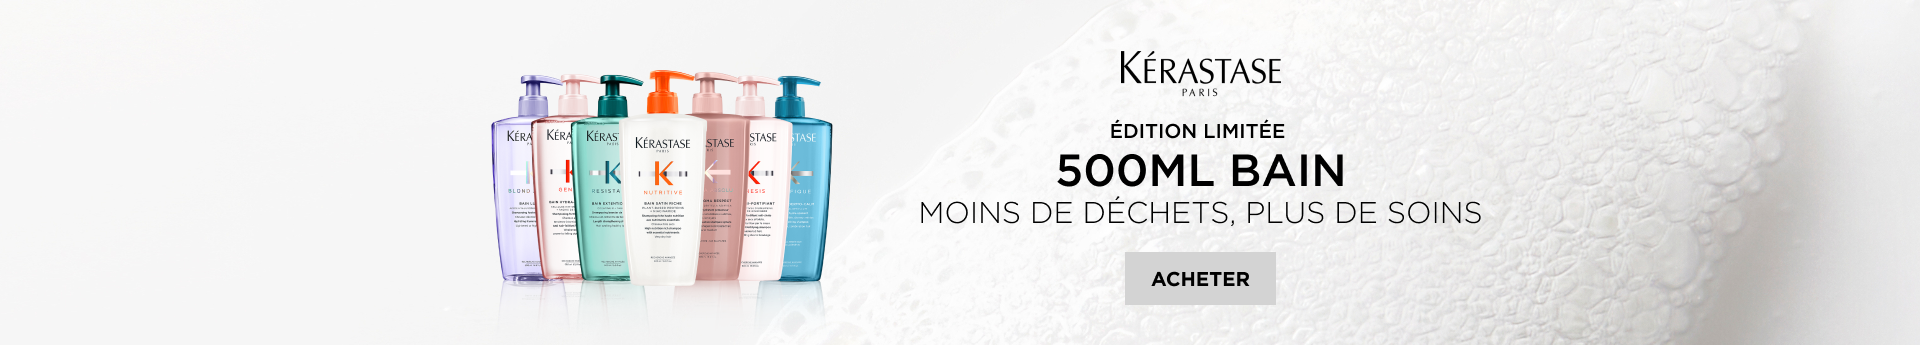 24-03-kr-500ml | L'Oréal Partner Shop